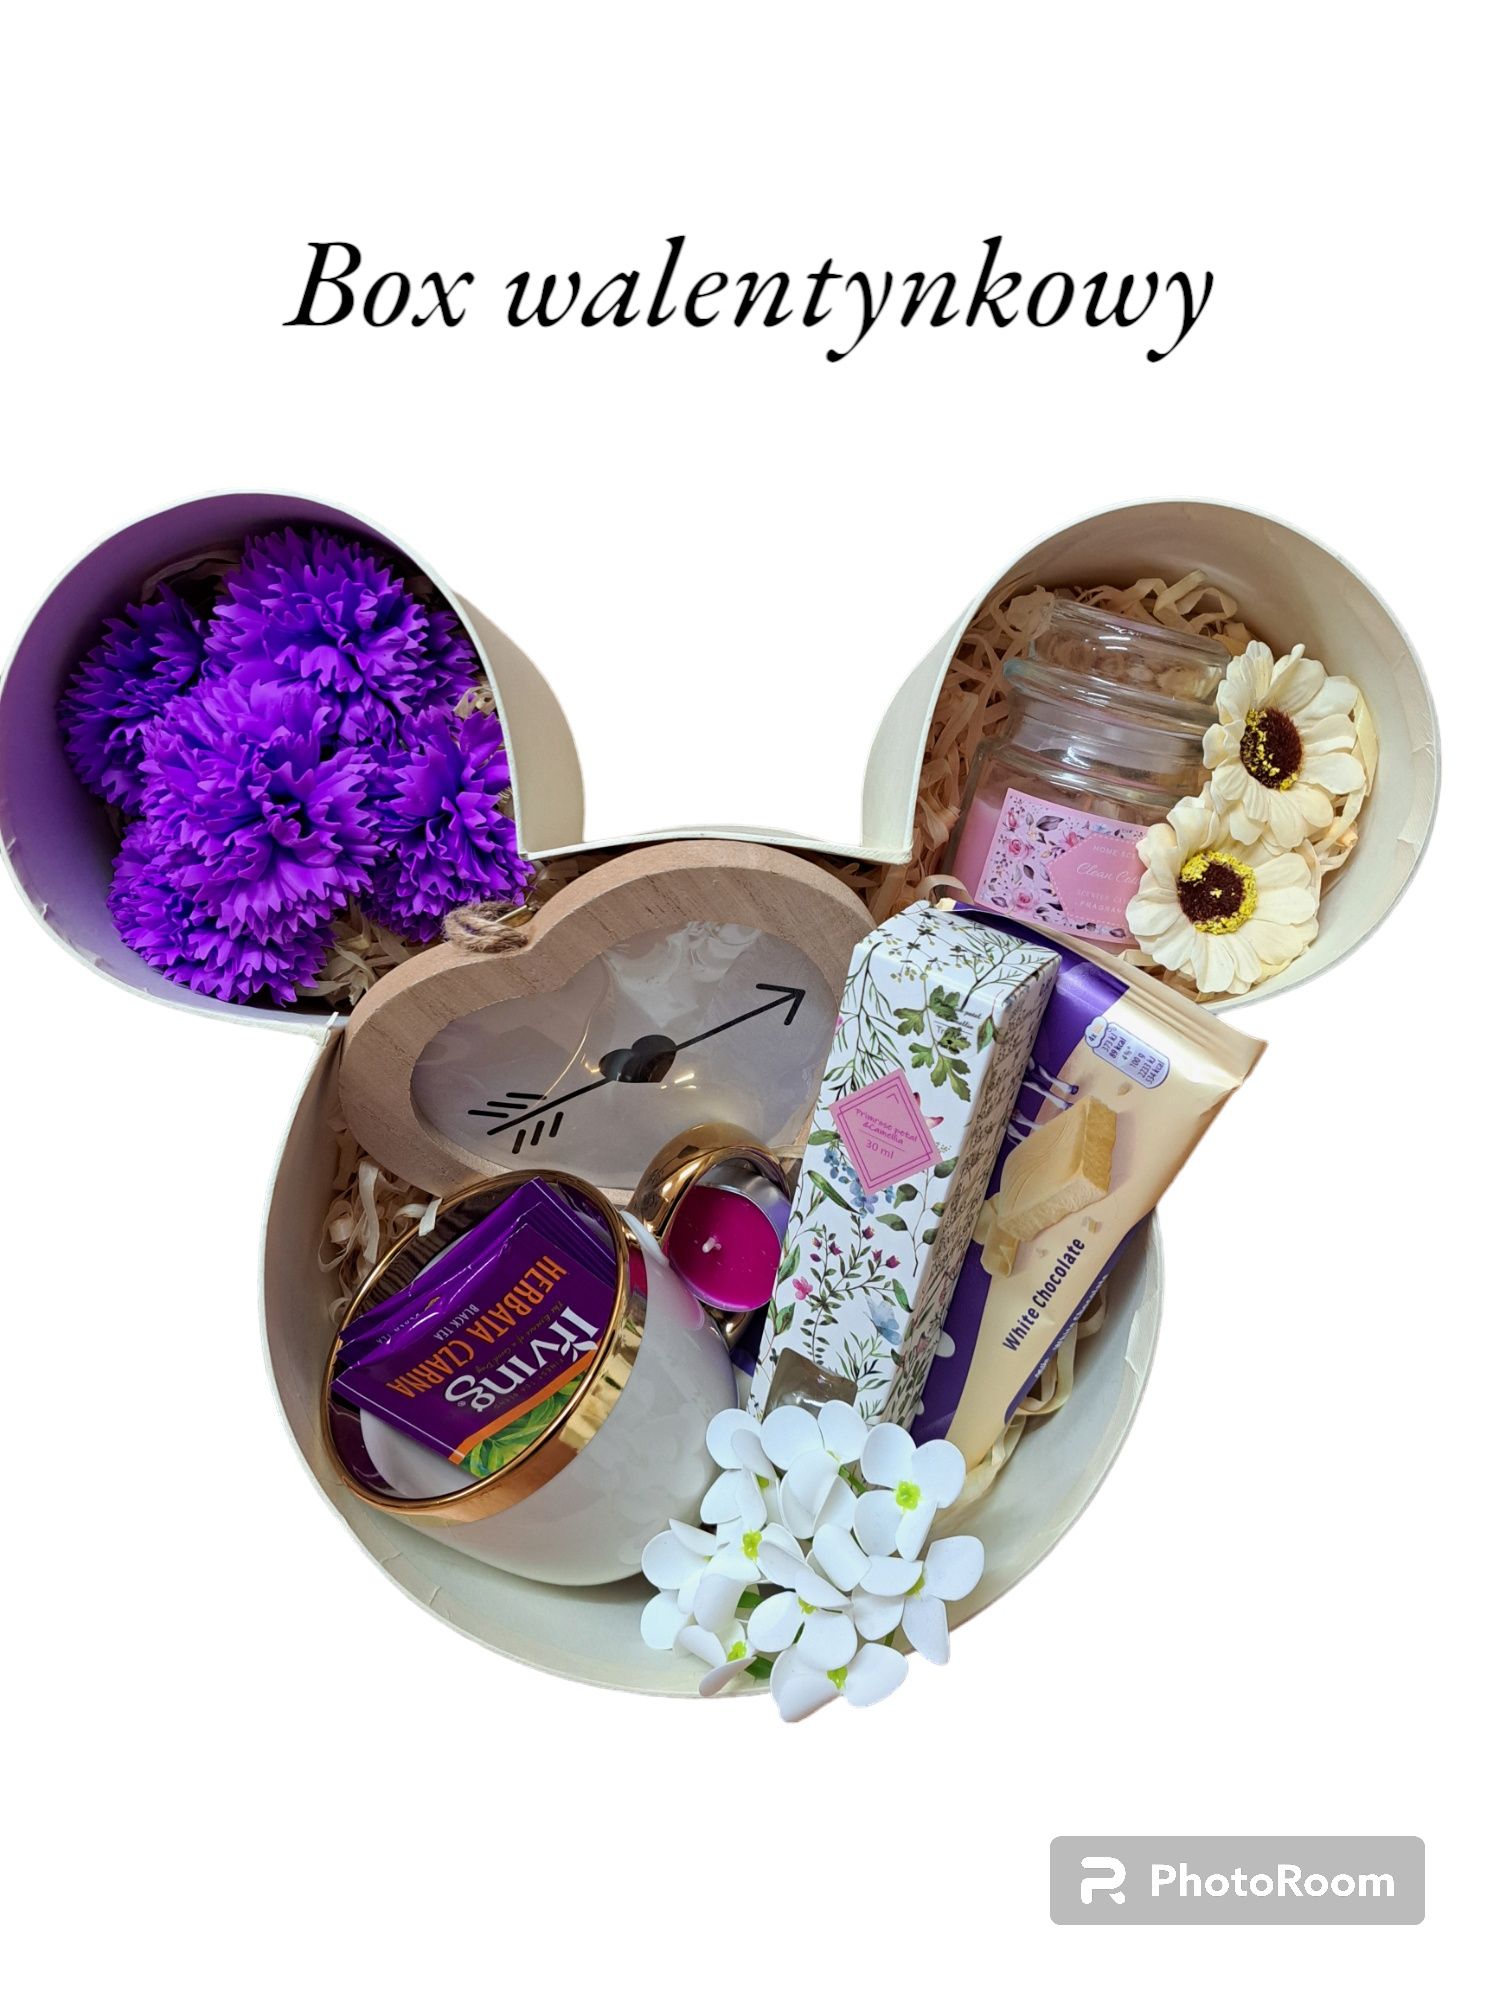 Walentynki Box Prezent Myszka Mickey imieniny urodziny ślub pomysł ni